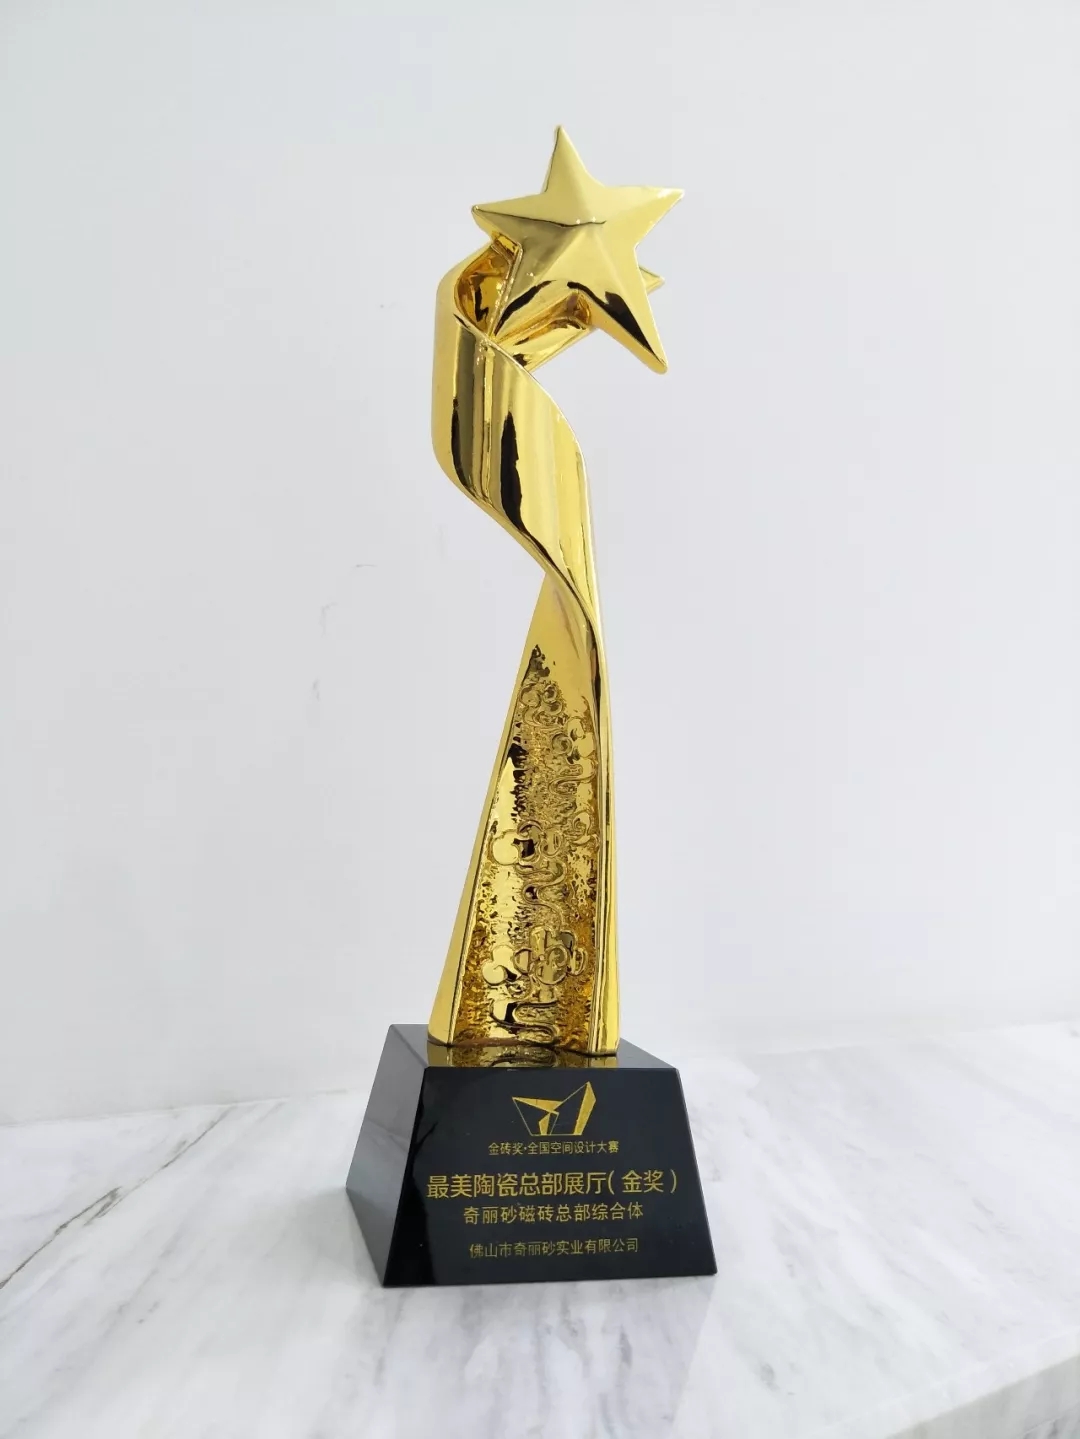 QUALICER全球总部荣获“最美陶瓷总部展厅”金奖